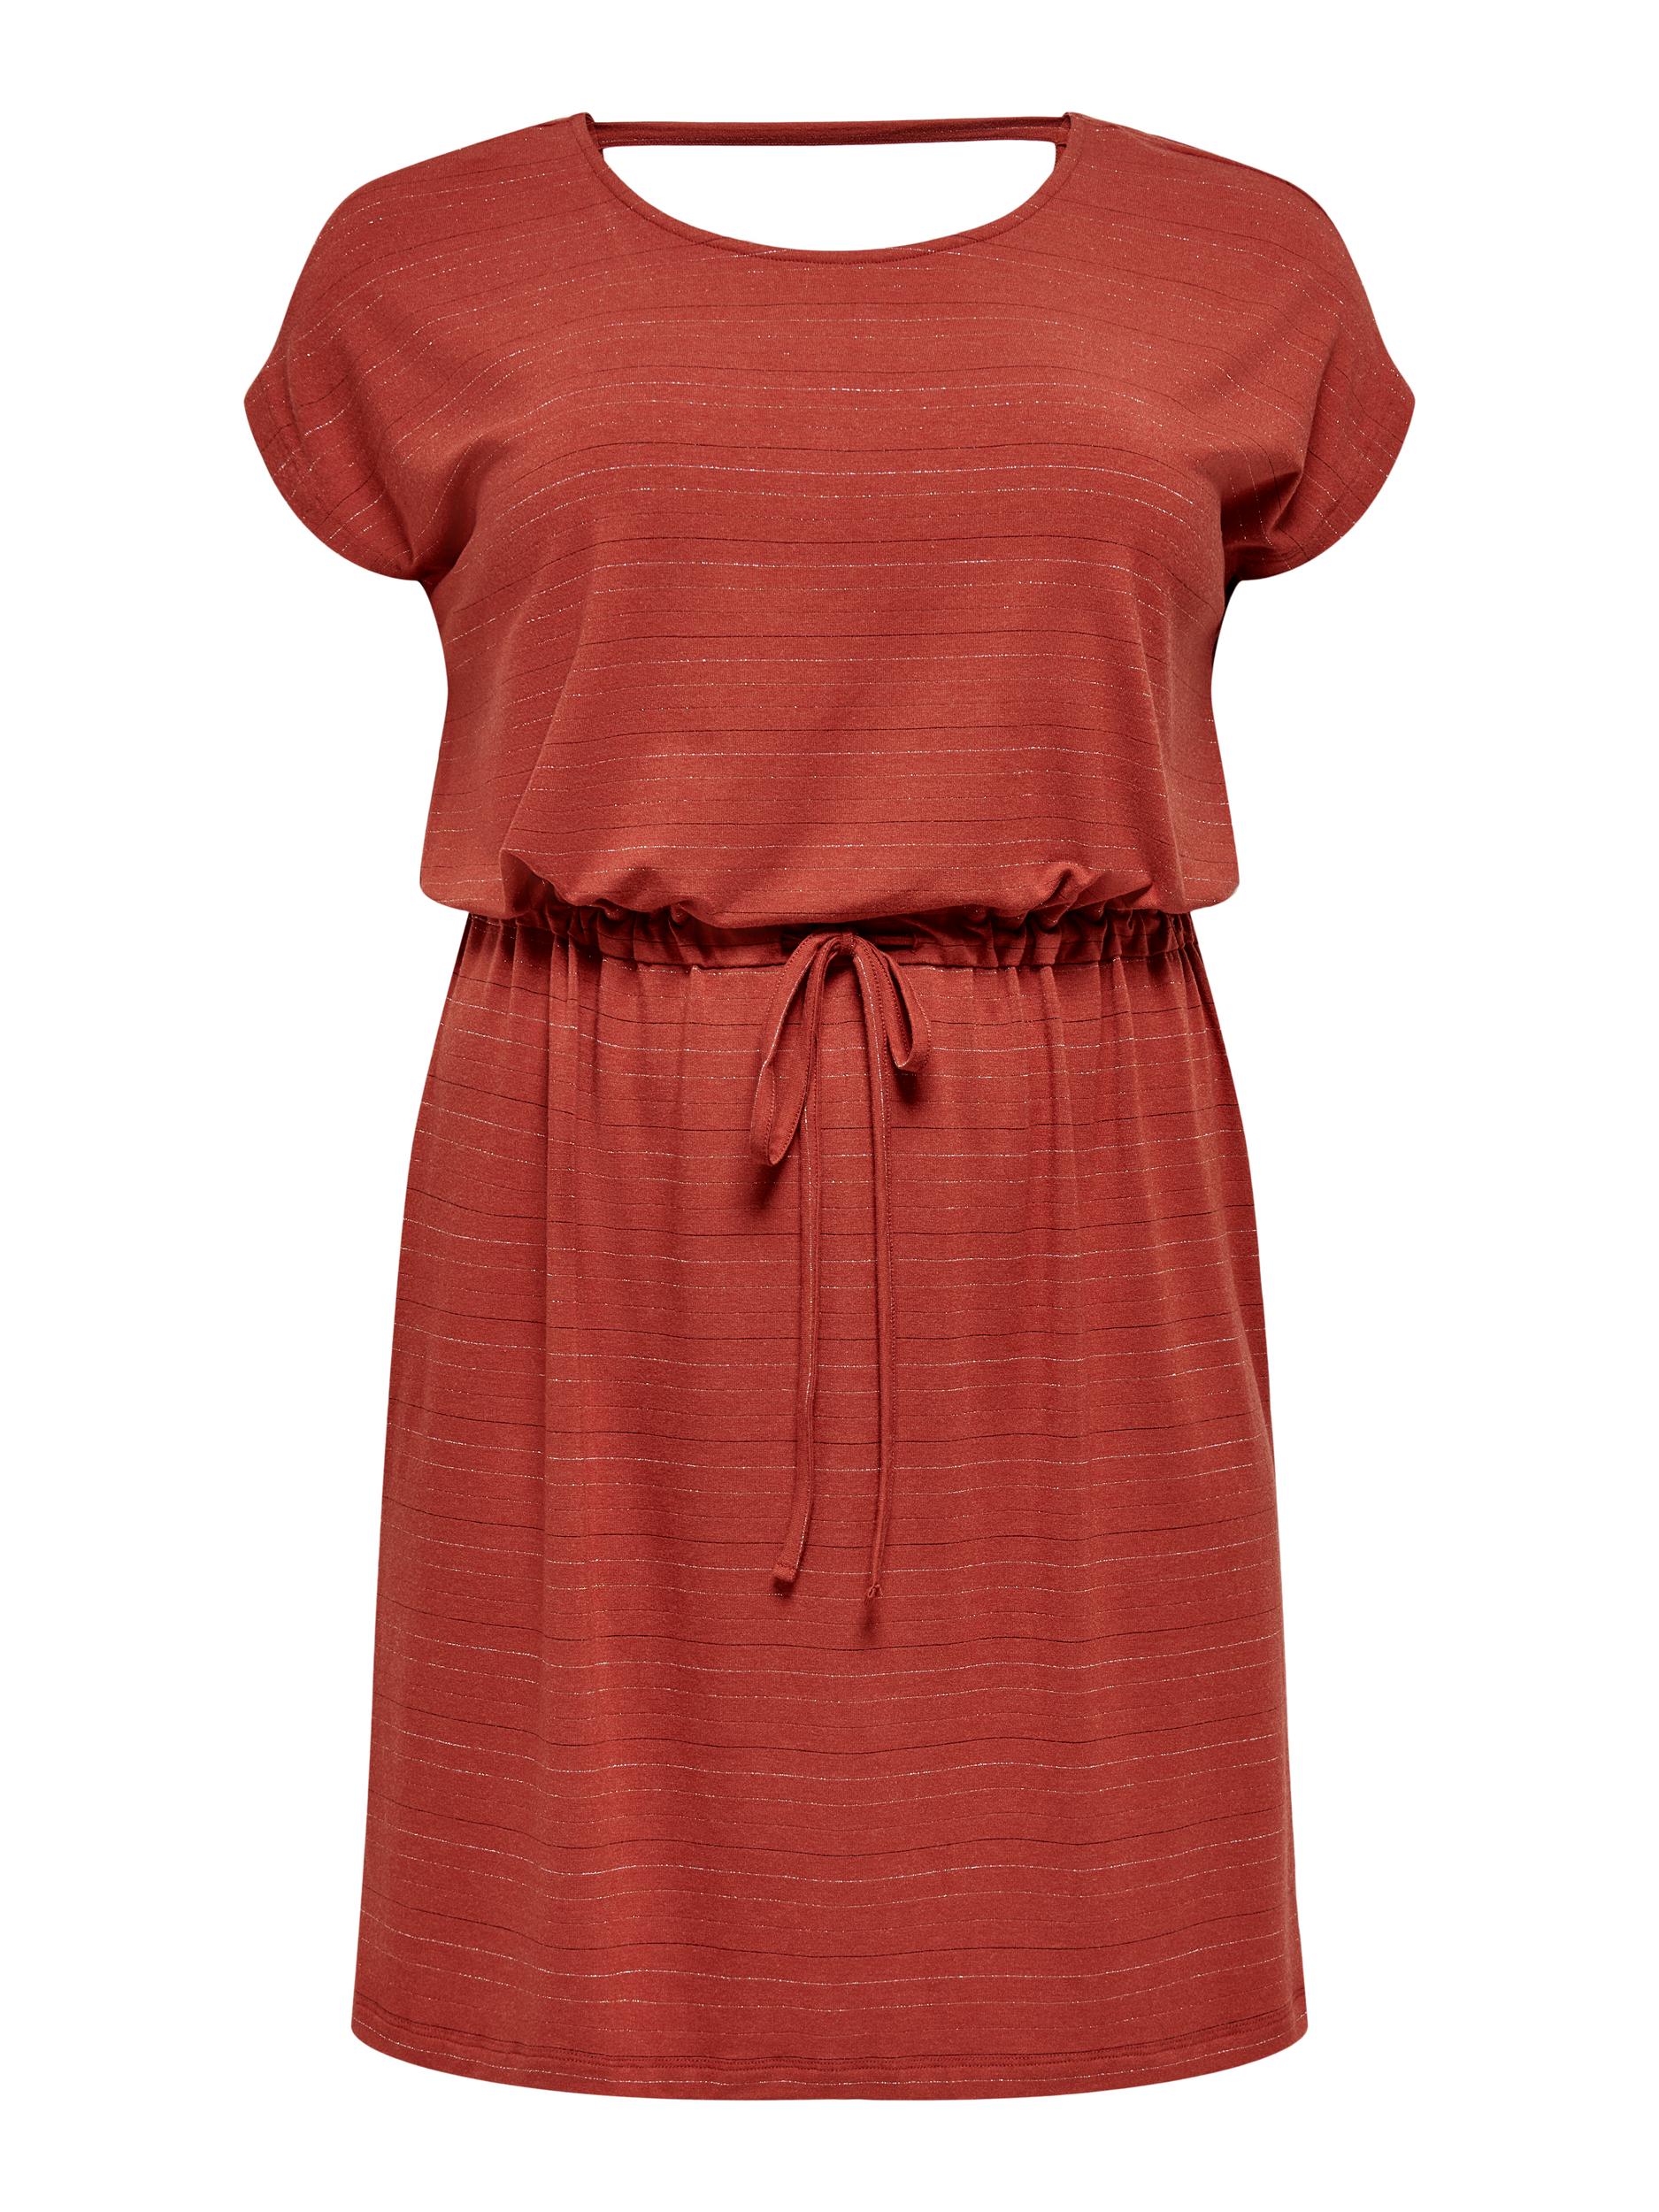 ONLY Carmakoma Letnia sukienka Moster w kolorze Rdzawobrązowym 